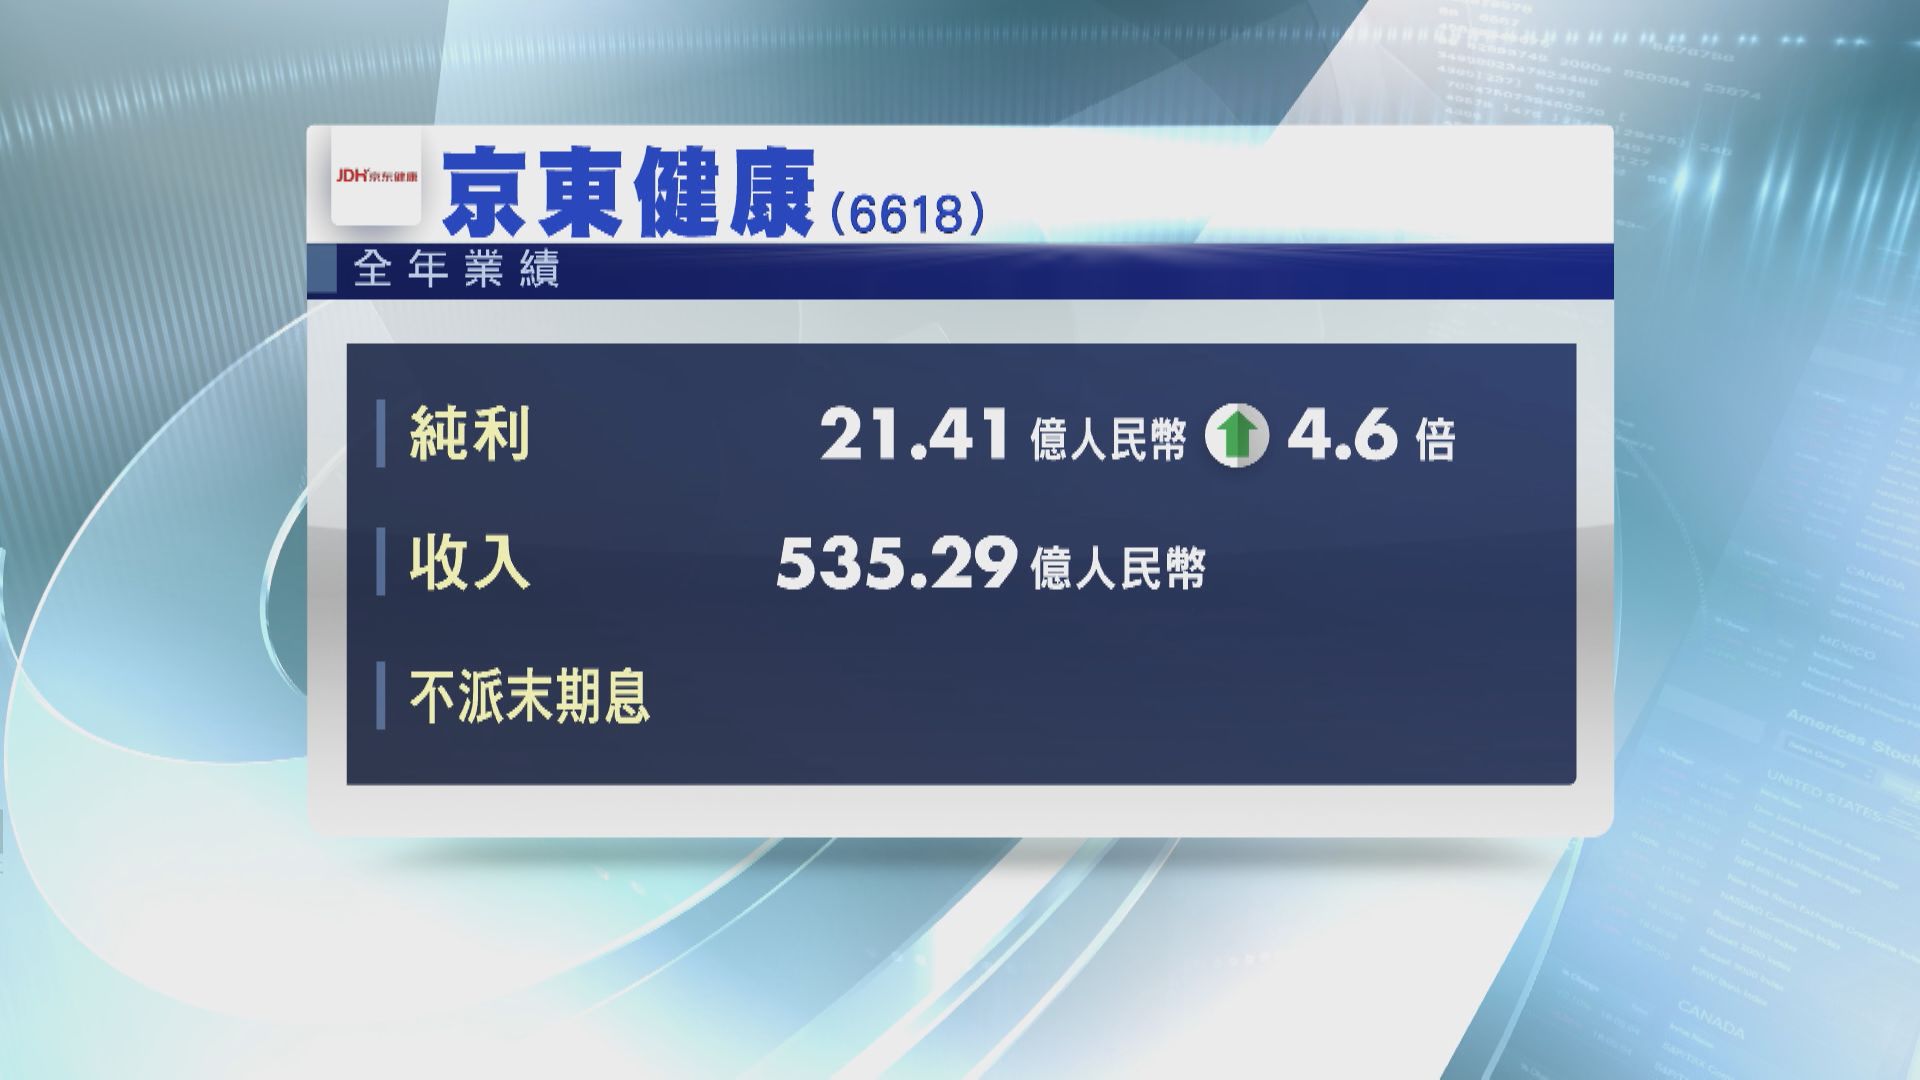 【業績速報】京東健康去年多賺4.6倍 快手轉賺逾63億人幣